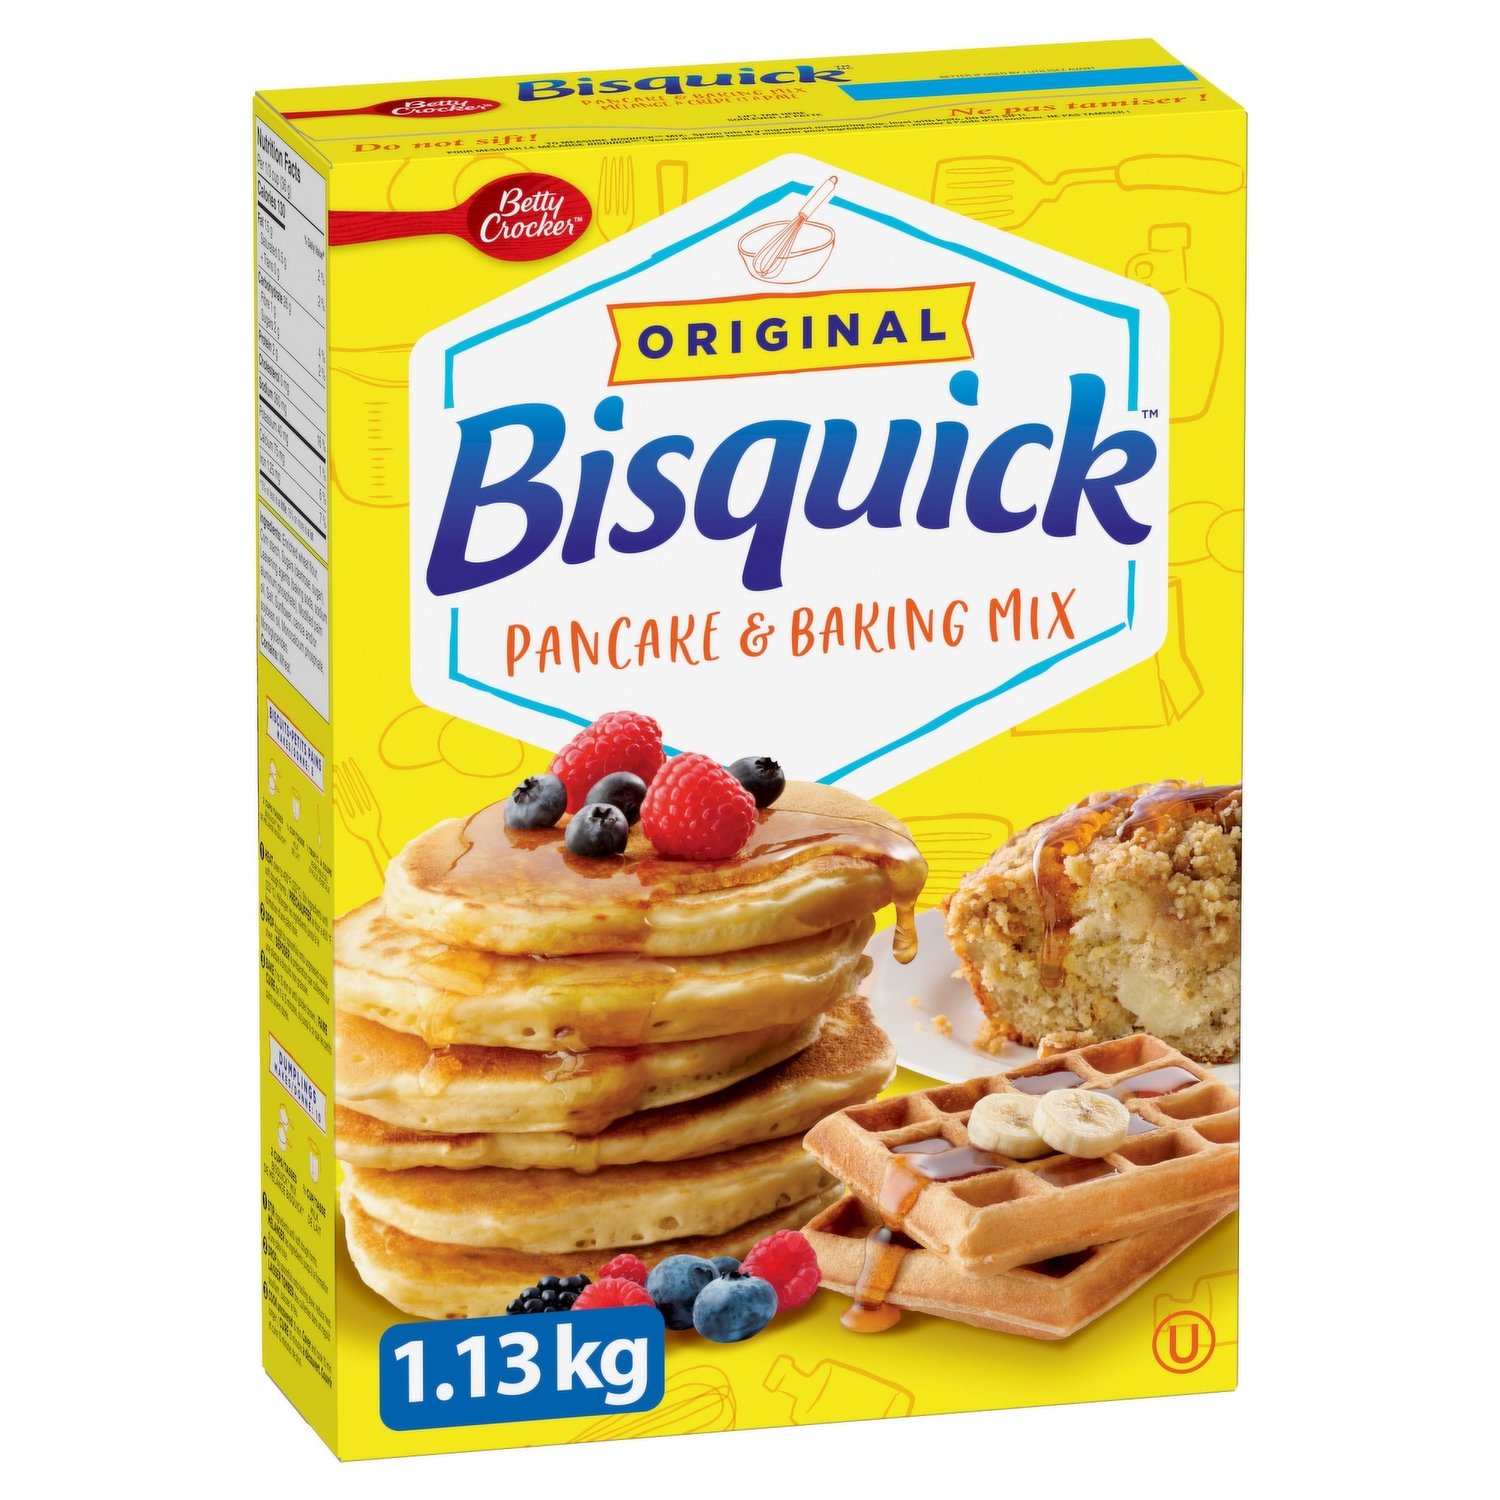 Betty Crocker - Bisquick Pancake & Baking Mix, Original - Save-On-Foods